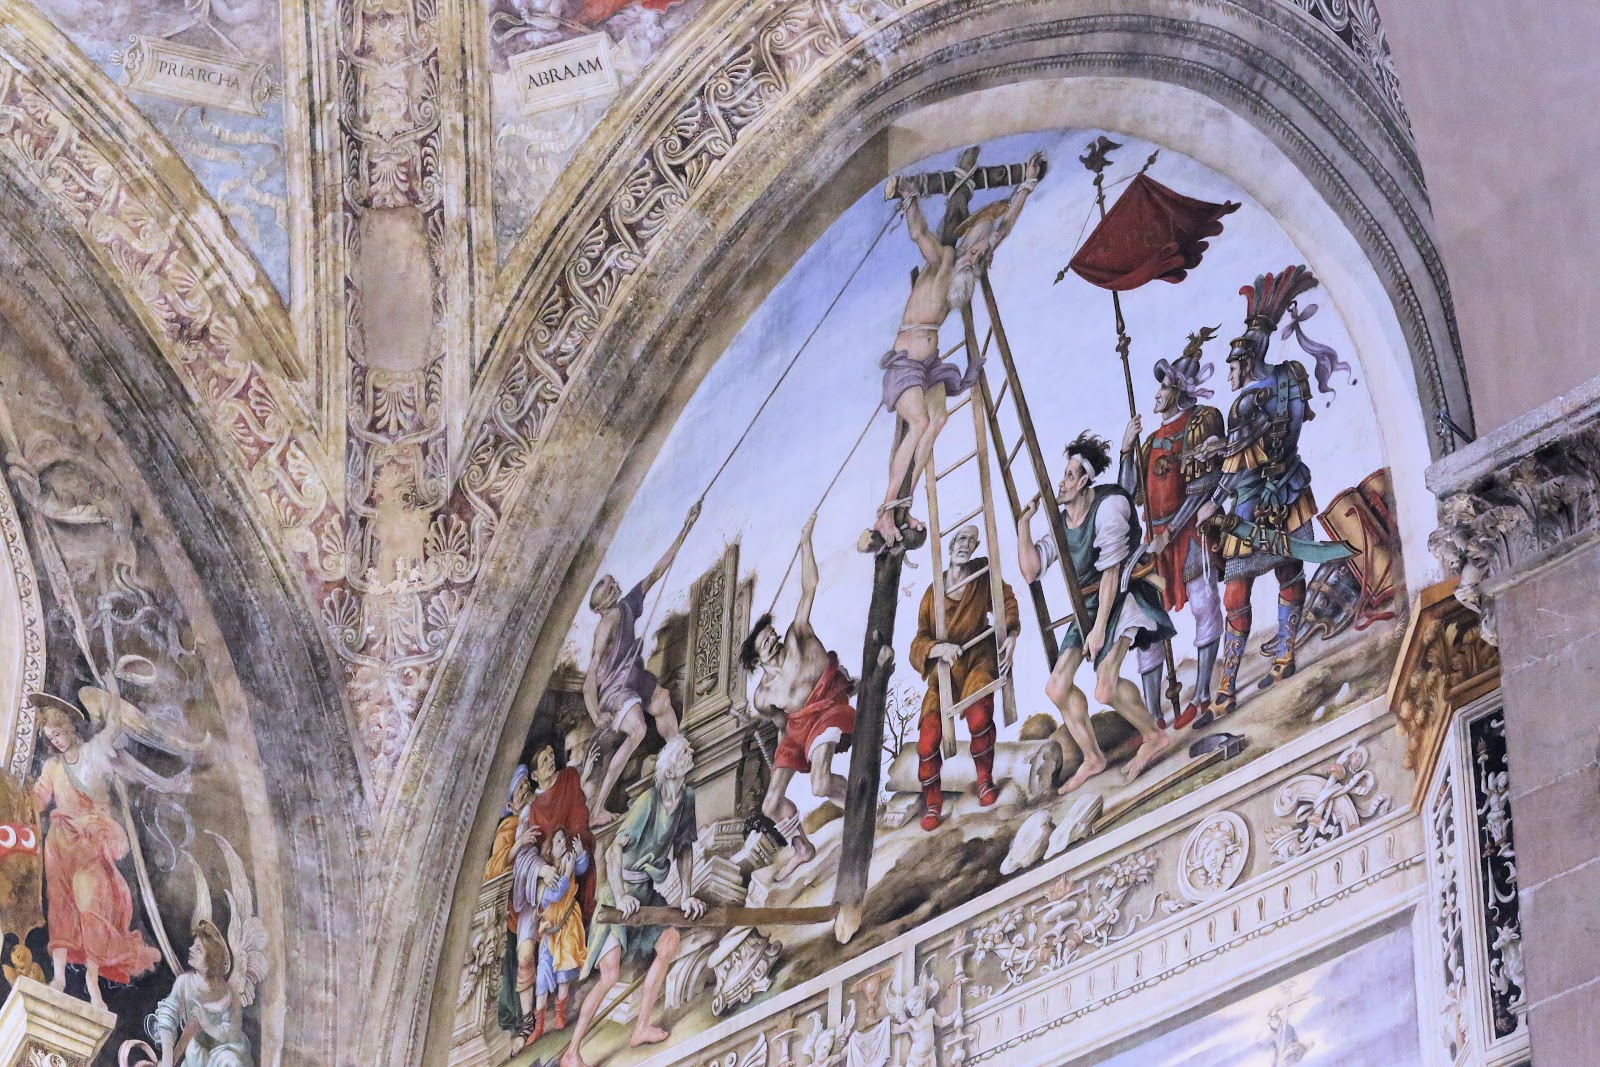 Filippino+Lippi-1457-1504 (15).jpg